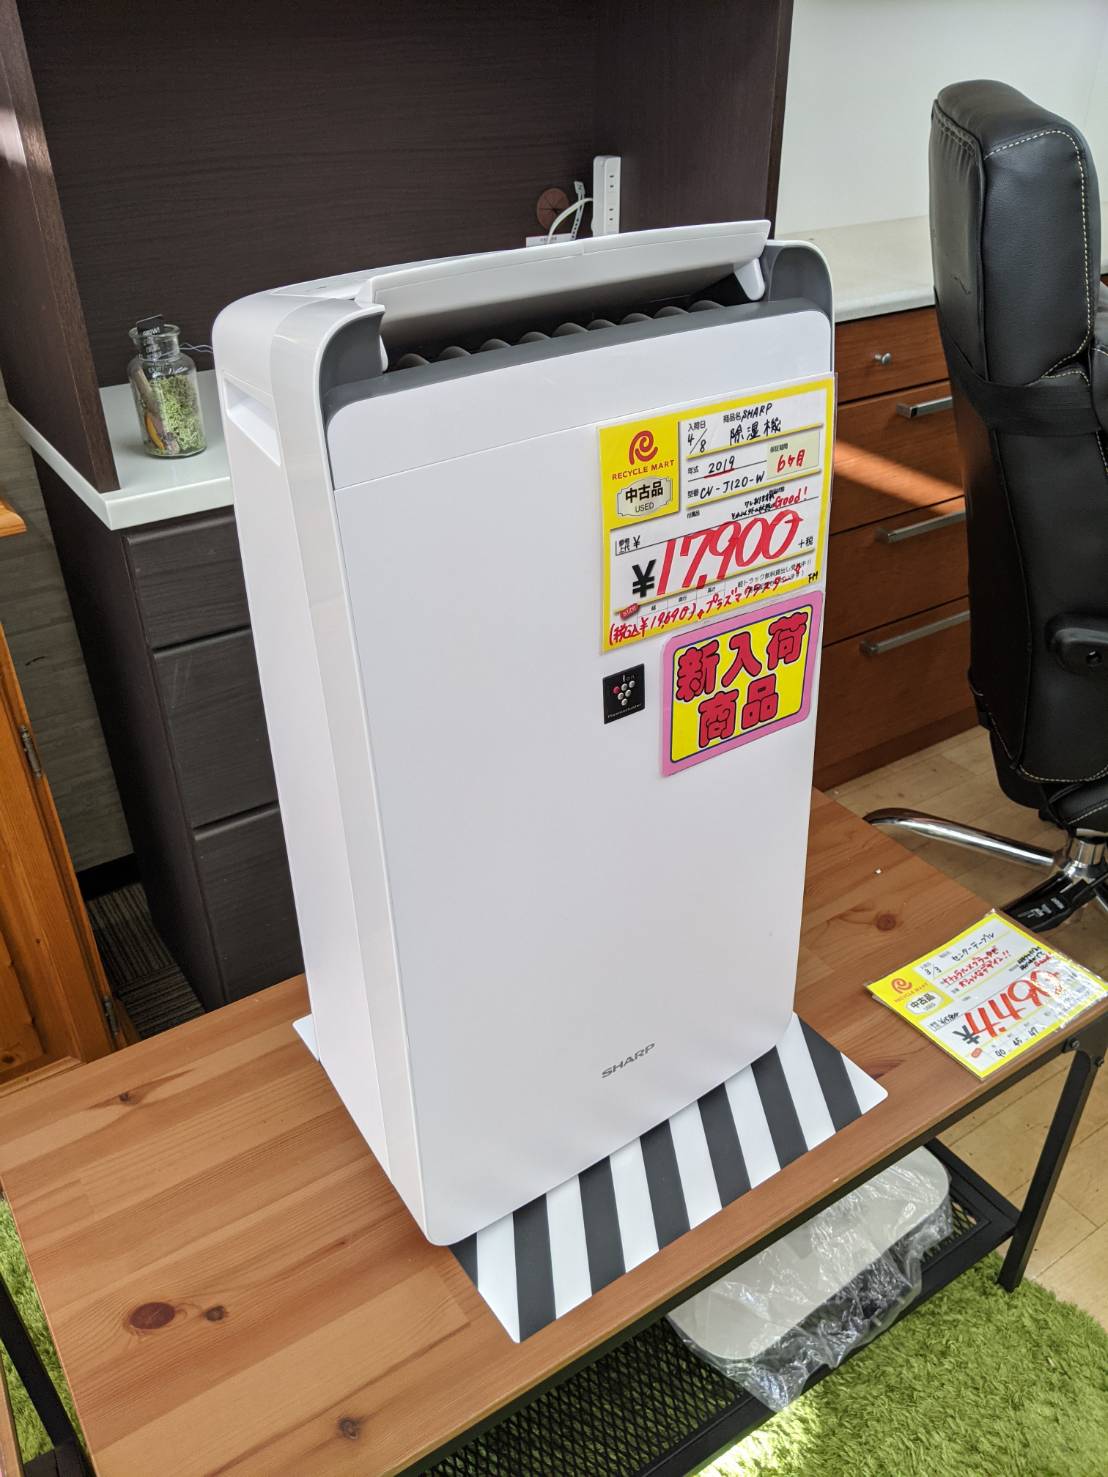 SHARP プラズマクラスター搭載 除湿器 2019年 CW-J120 を買取りさせて頂きました。 - リサイクルマートは現在冷蔵庫の買取、家具の買取強化中です！お気軽にお問い合わせください。